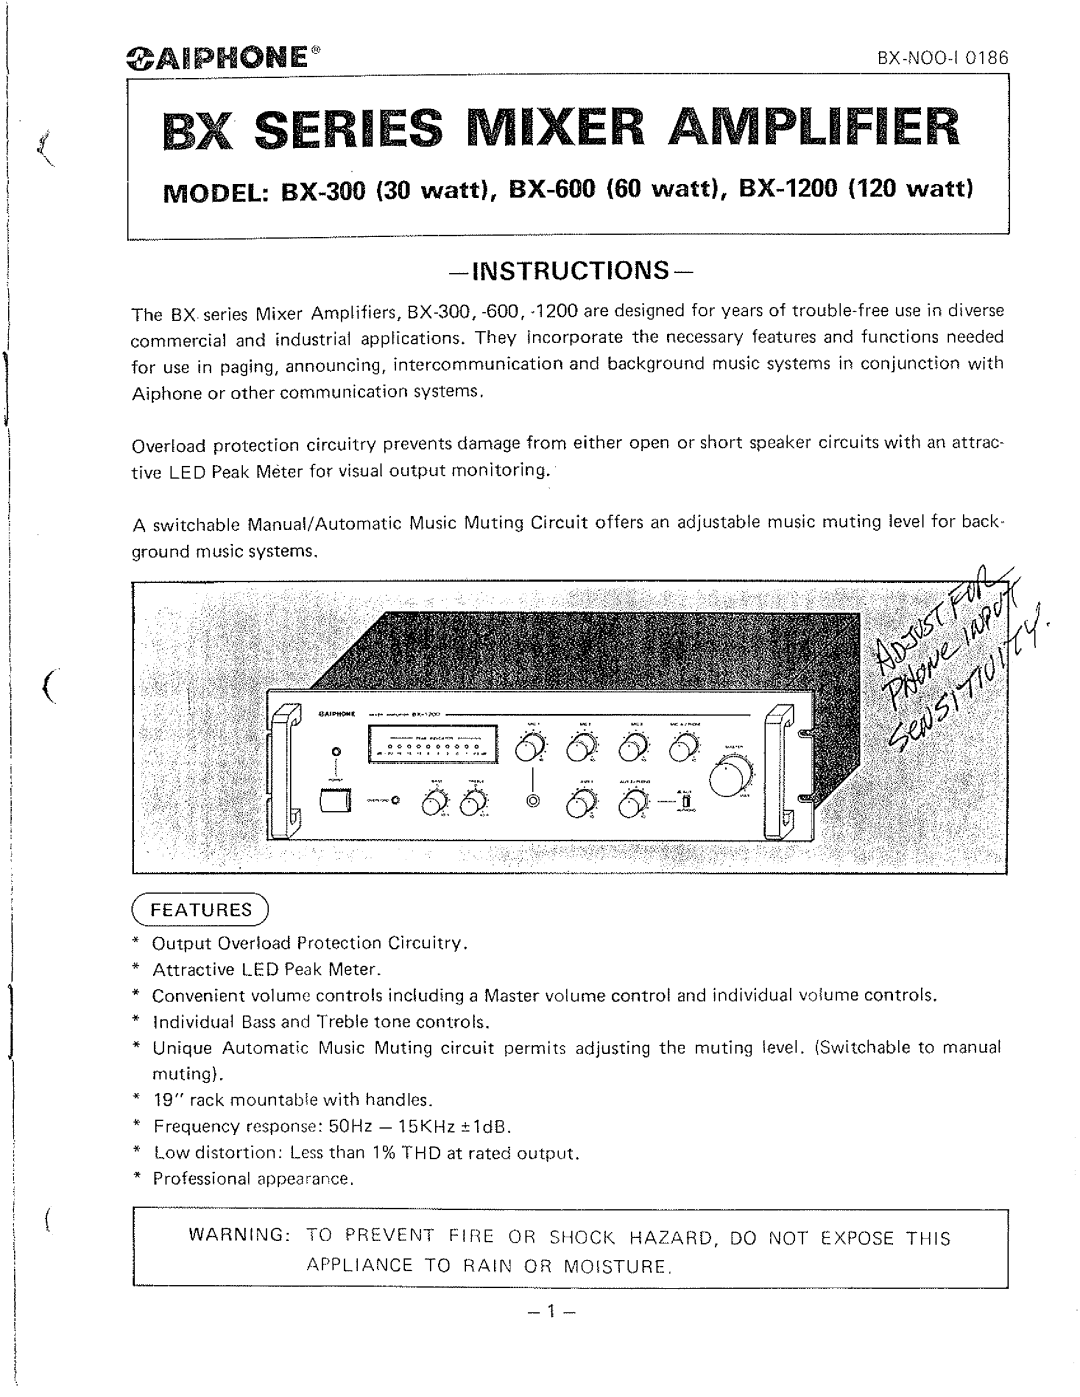 Aiphone BX-1200, BX-300, BX-600 manual 